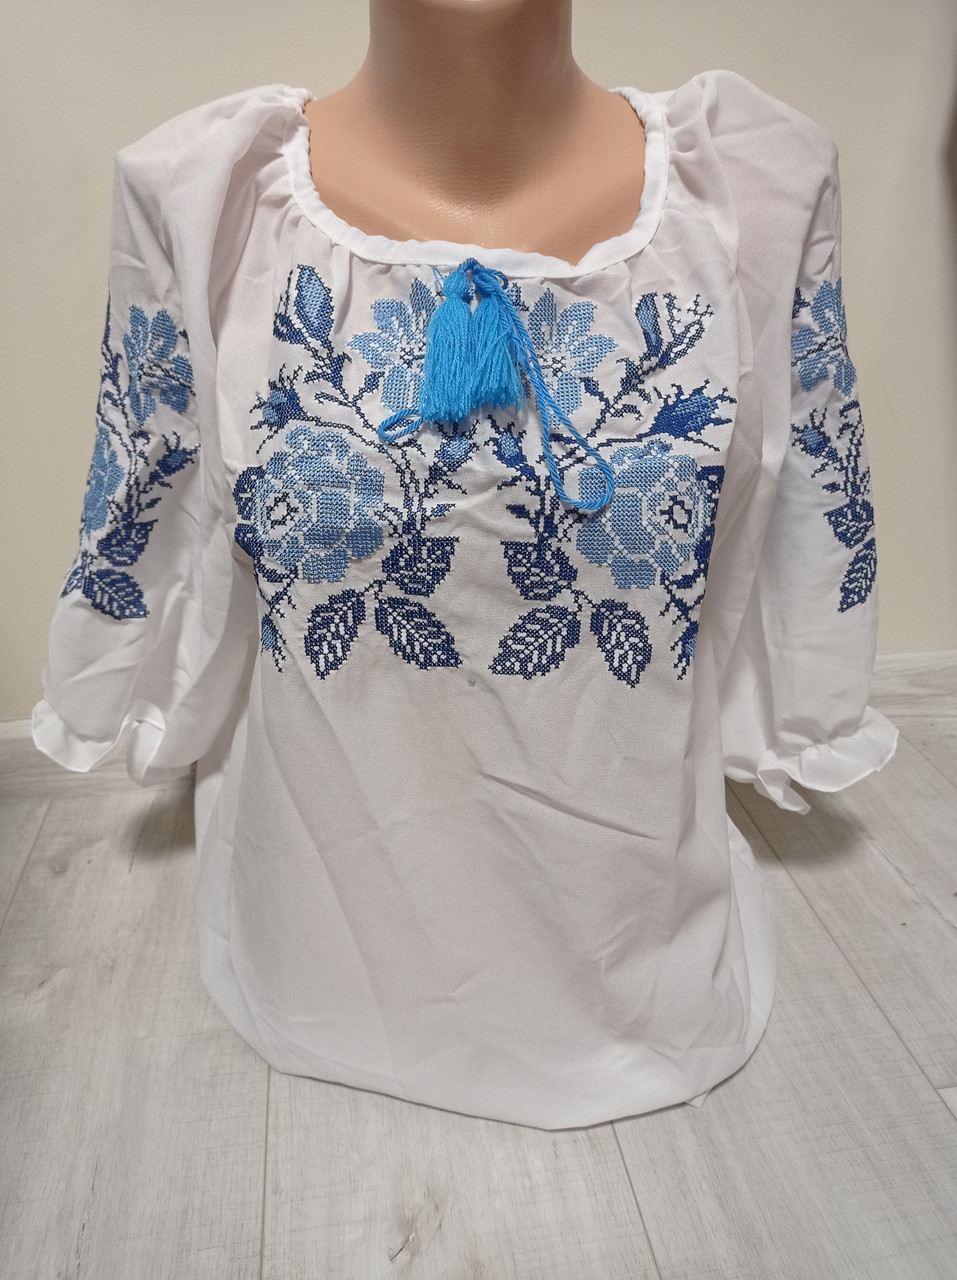 Жіноча біла блузка з вишивкою "Блакитні троянди" з рукавом 3/4 Україна УкраїнаТД 42-58 розміри